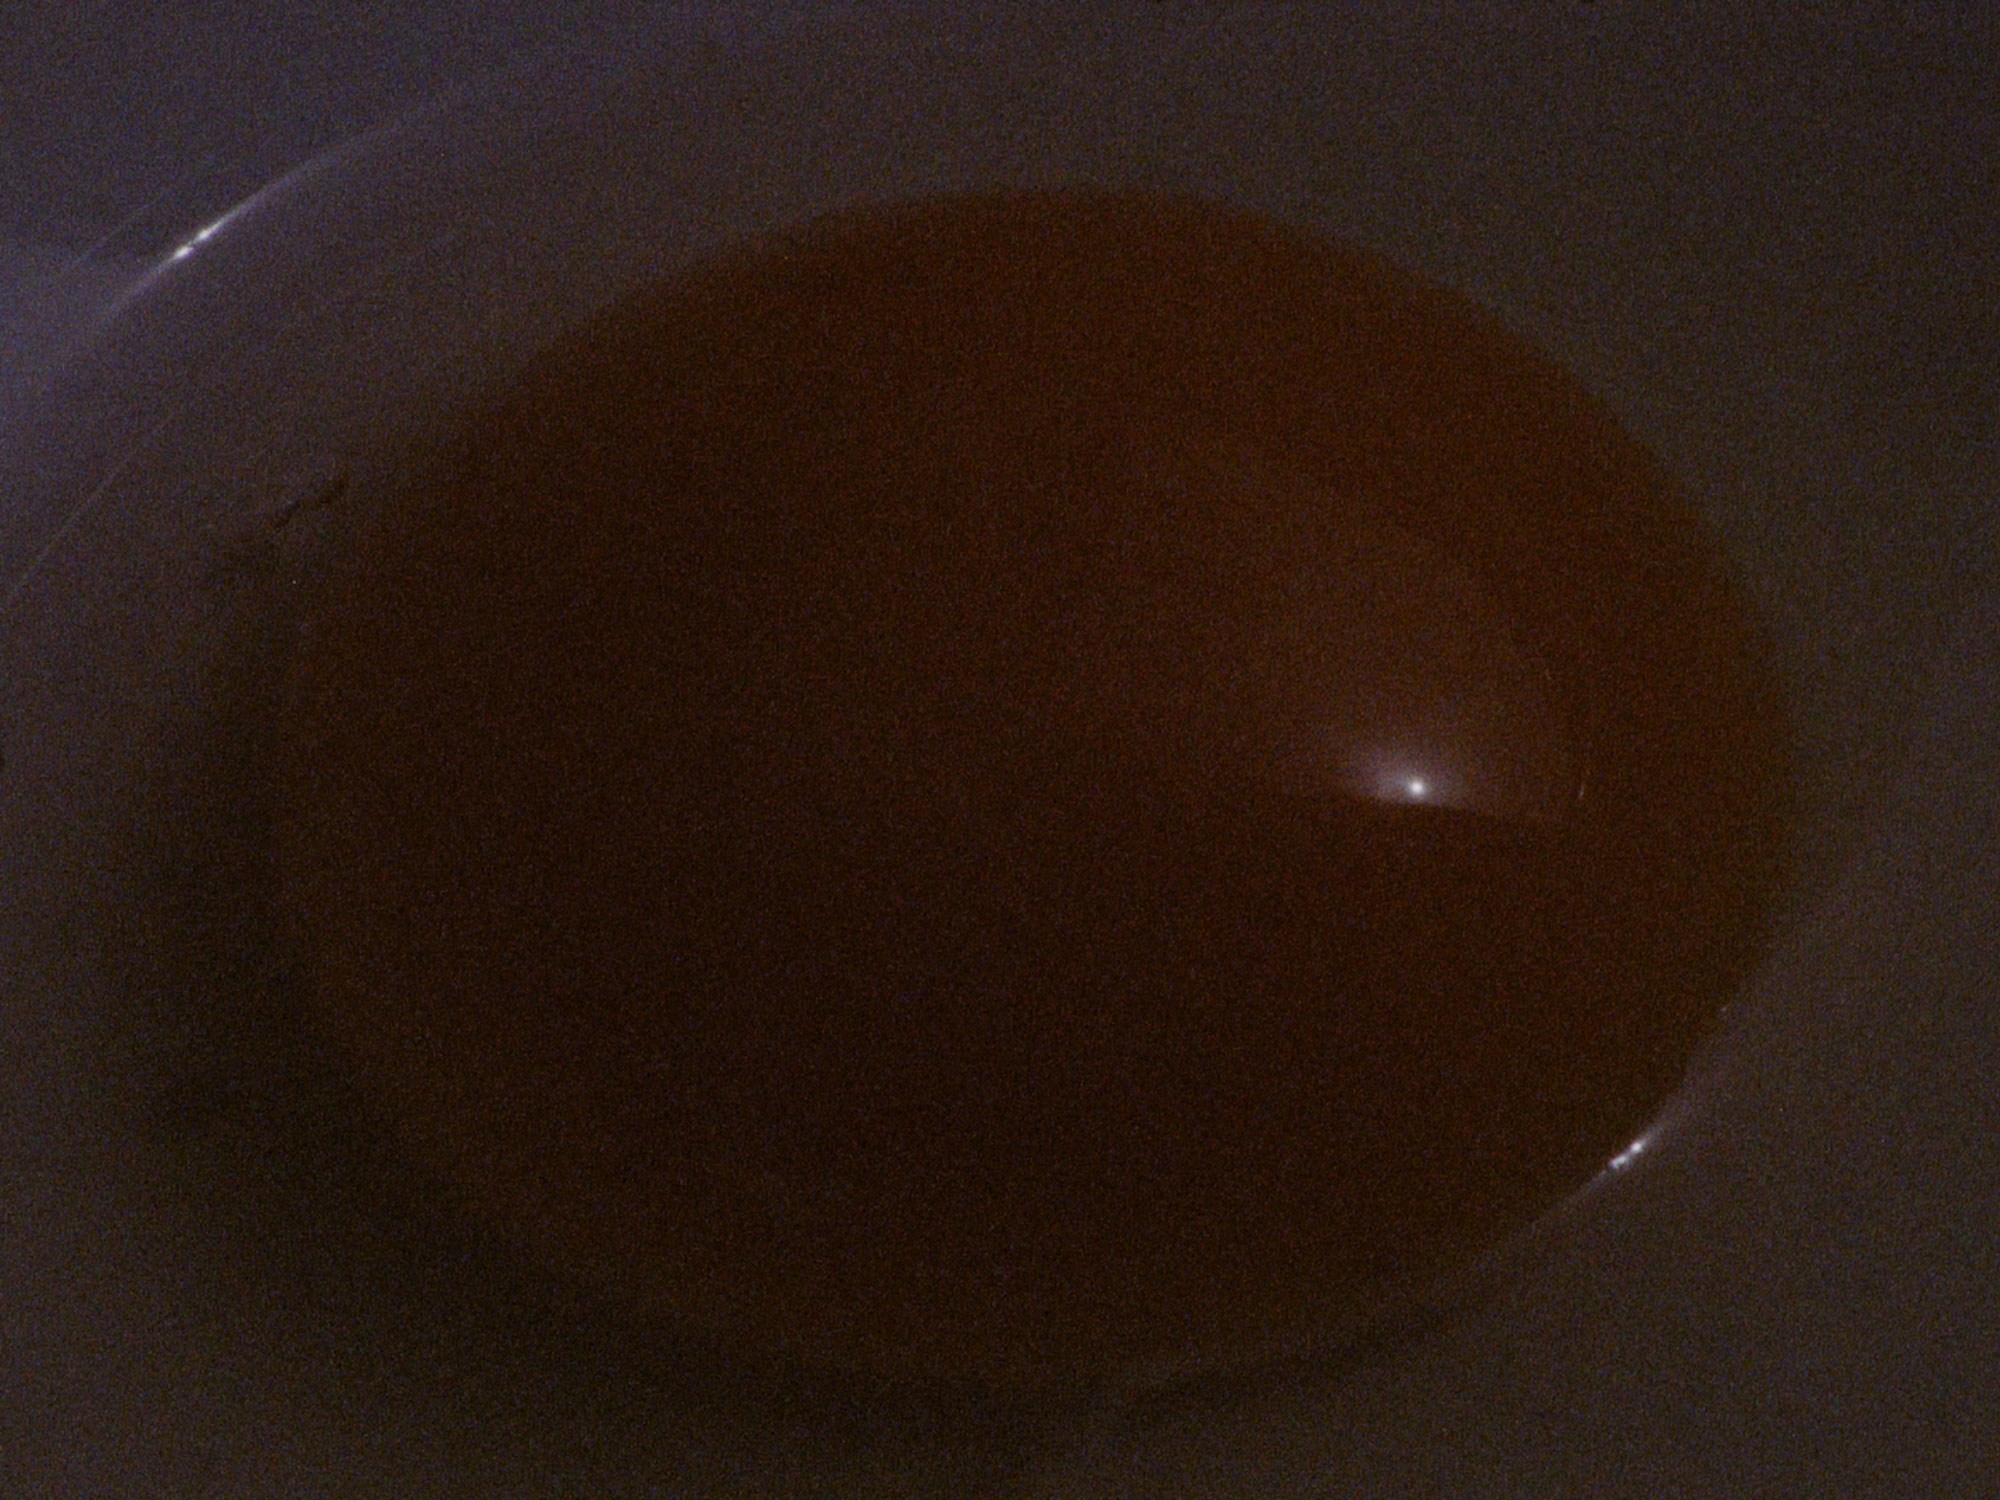 16mm film still: an egg yolk in the dark